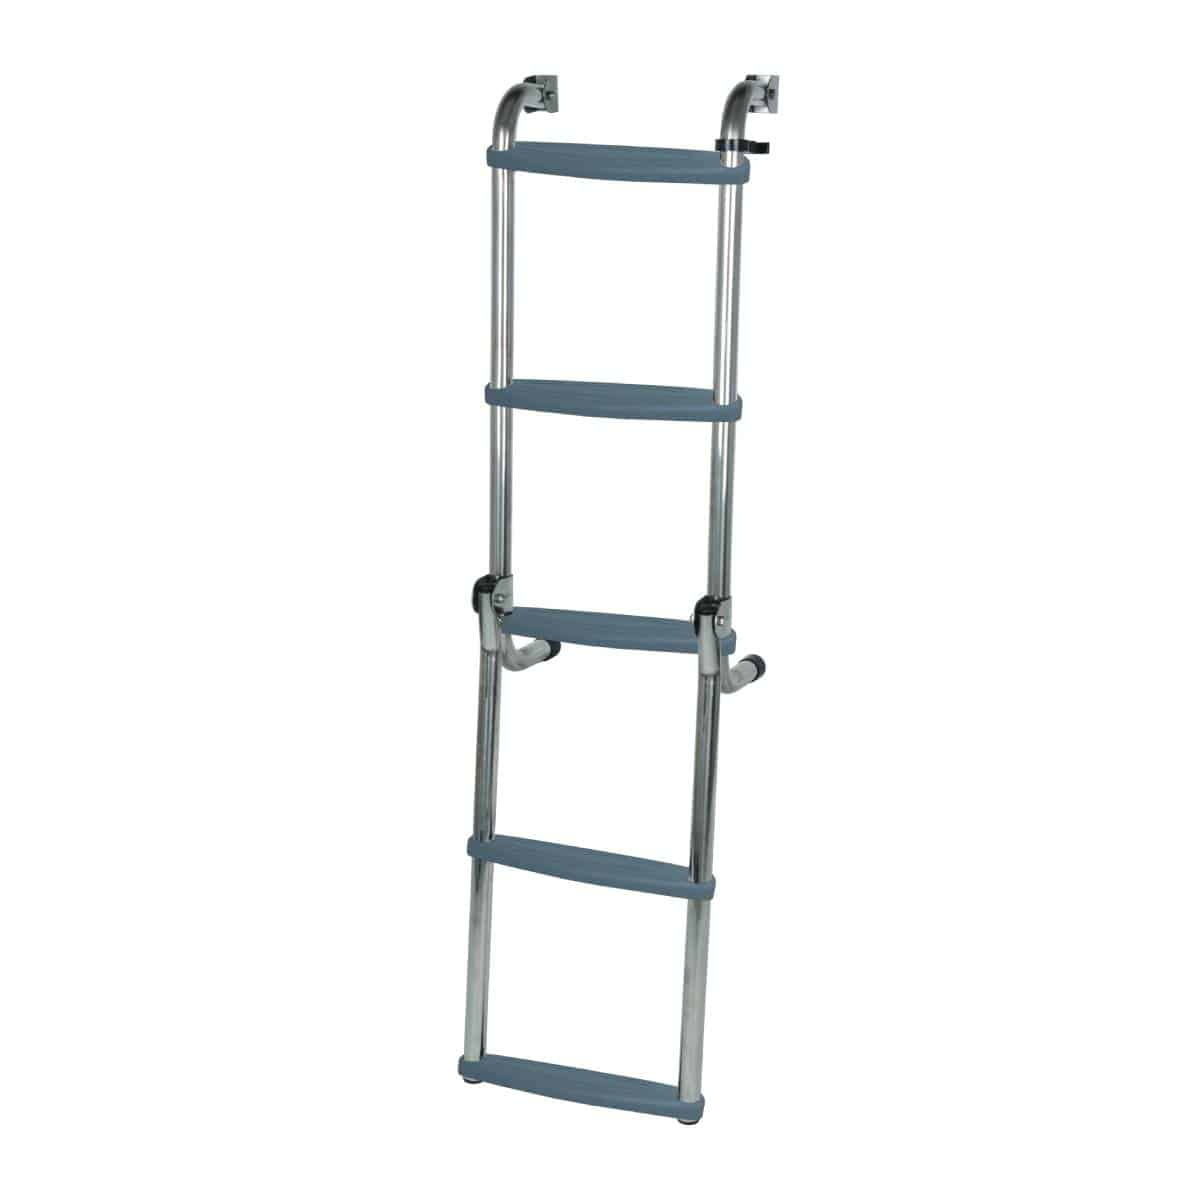 Long Base Ladder – Stainless Steel folding